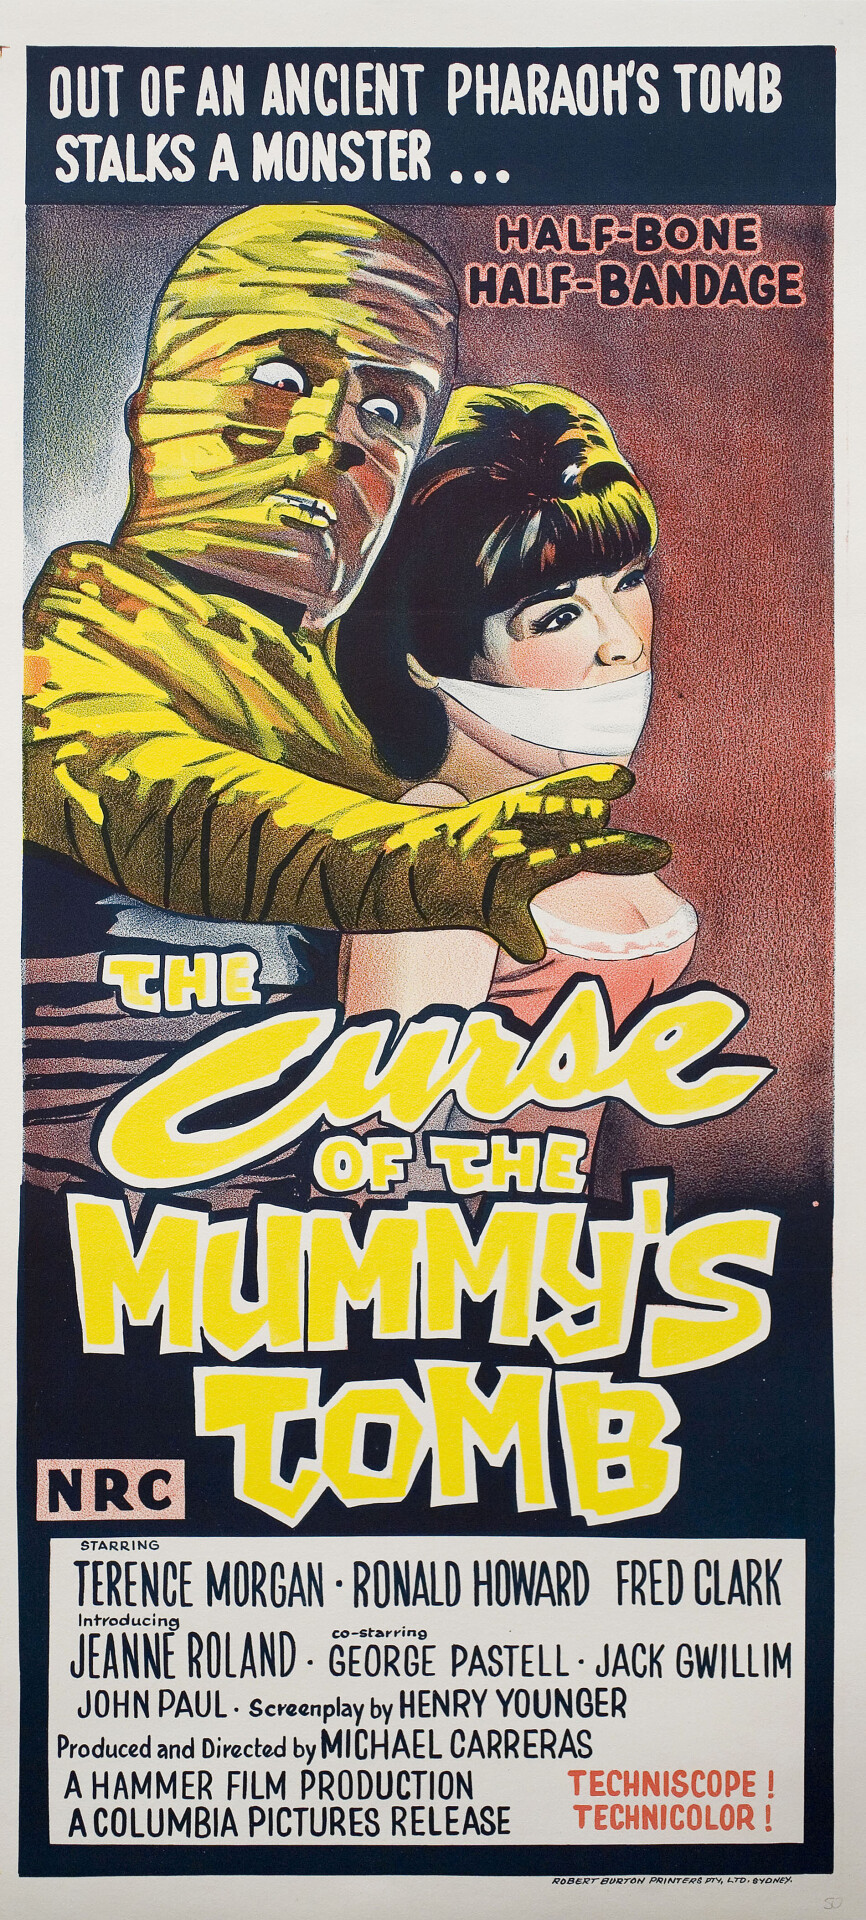 Проклятие гробницы мумии (The Curse of the Mummys Tomb, 1964), режиссёр Майкл Каррерас, австралийский постер к фильму (Hummer horror, 1964 год)